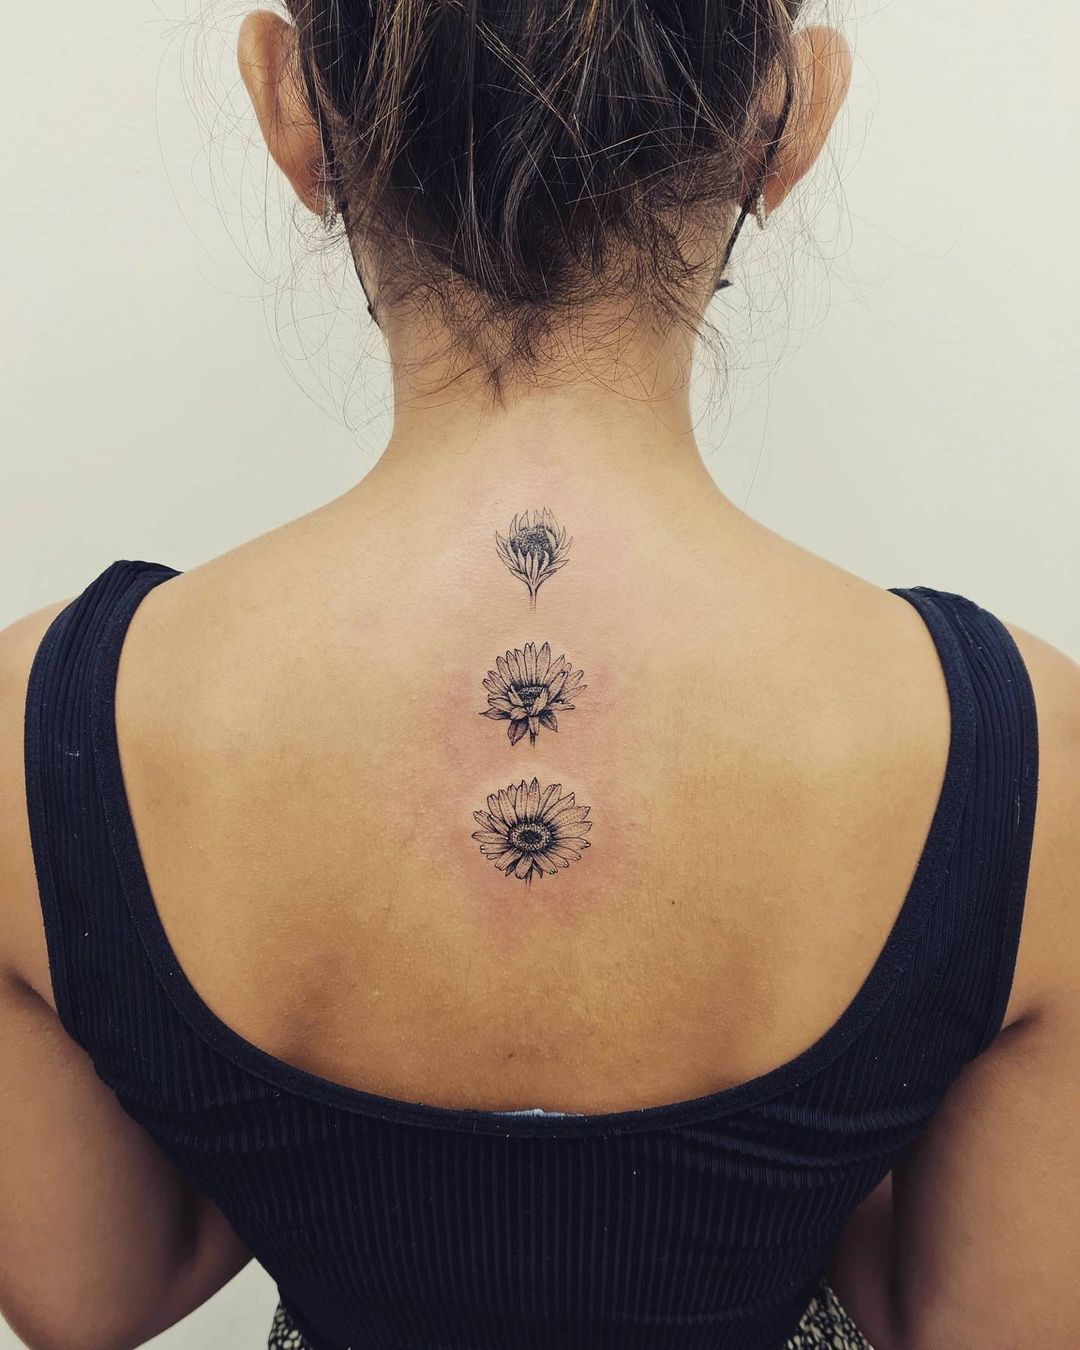 Descending Sunflower Back Tattoo In Fine Line